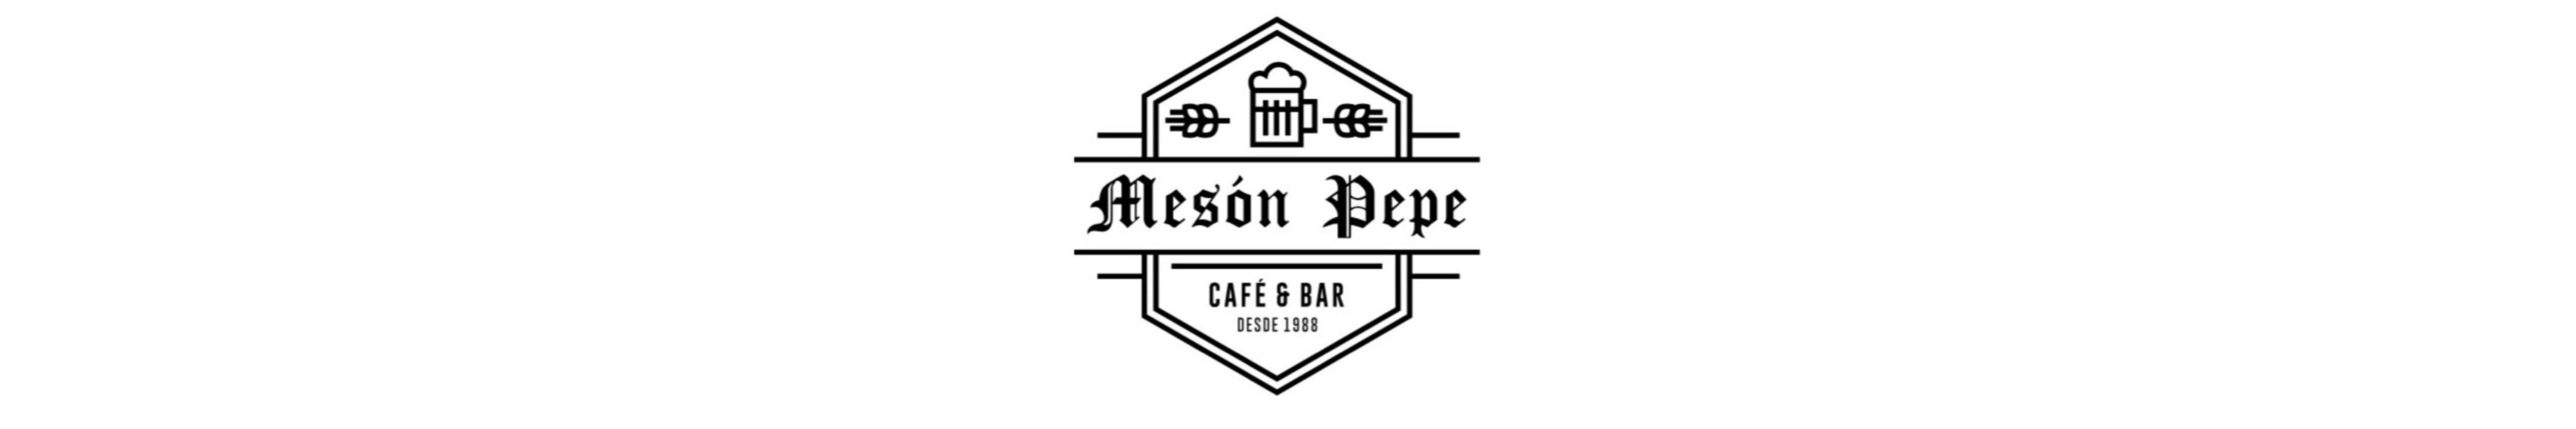 Café. Bar, Copas. Mesón Pepe